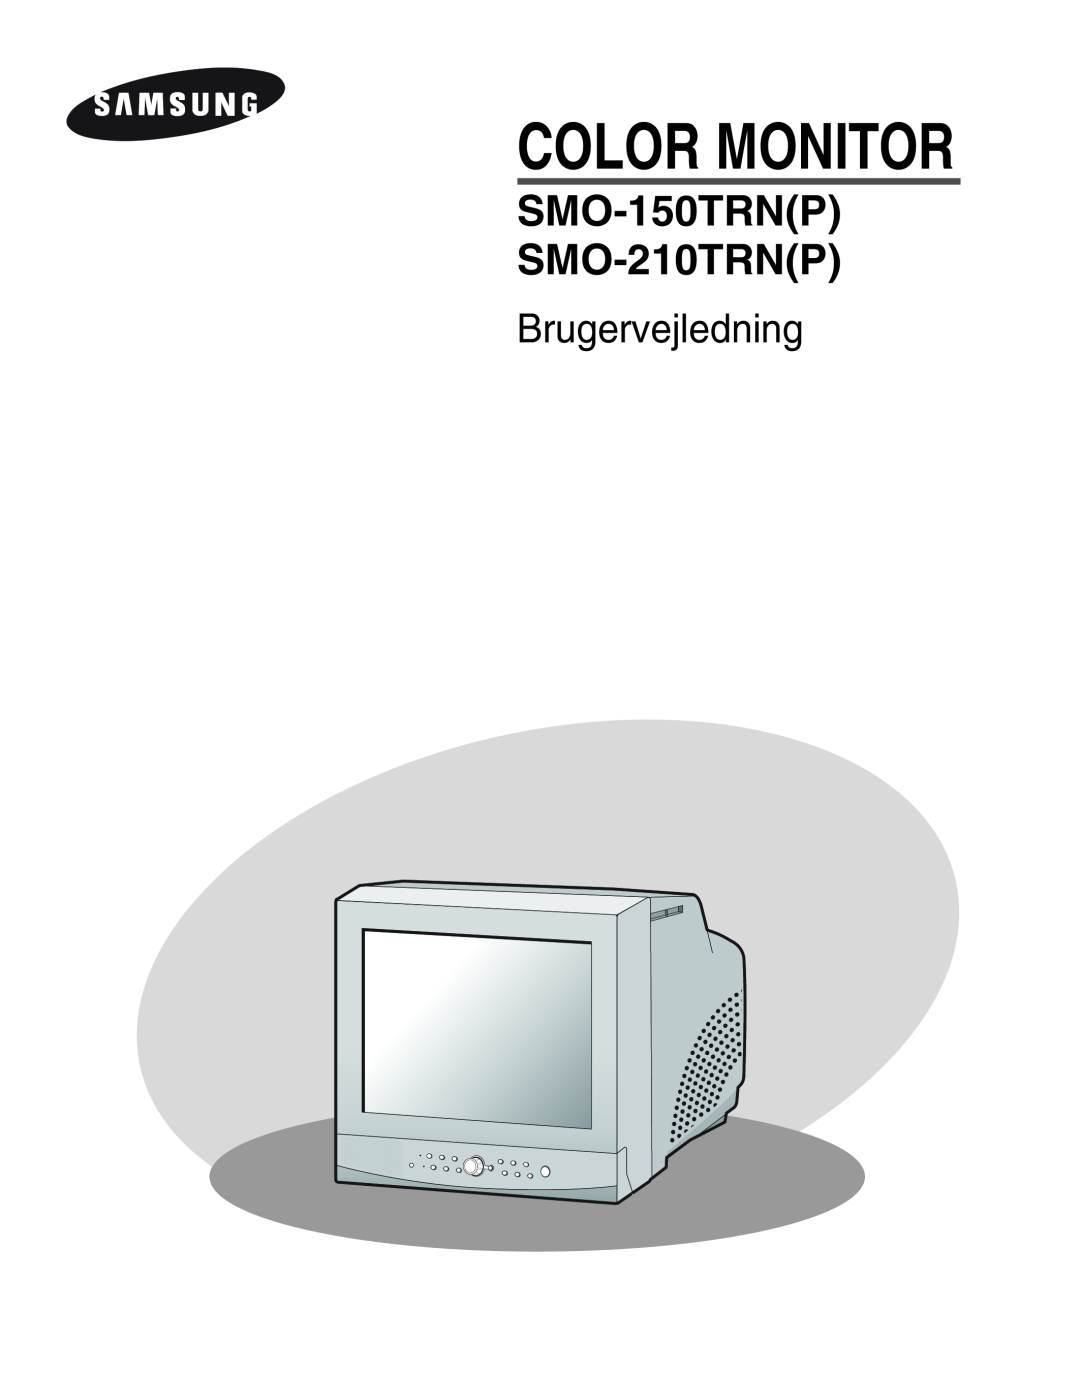 Samsung SMO-210MP/UMG, SMO-210TRP manual Brugervejledning, Color Monitor, SMO-150TRNP SMO-210TRNP 